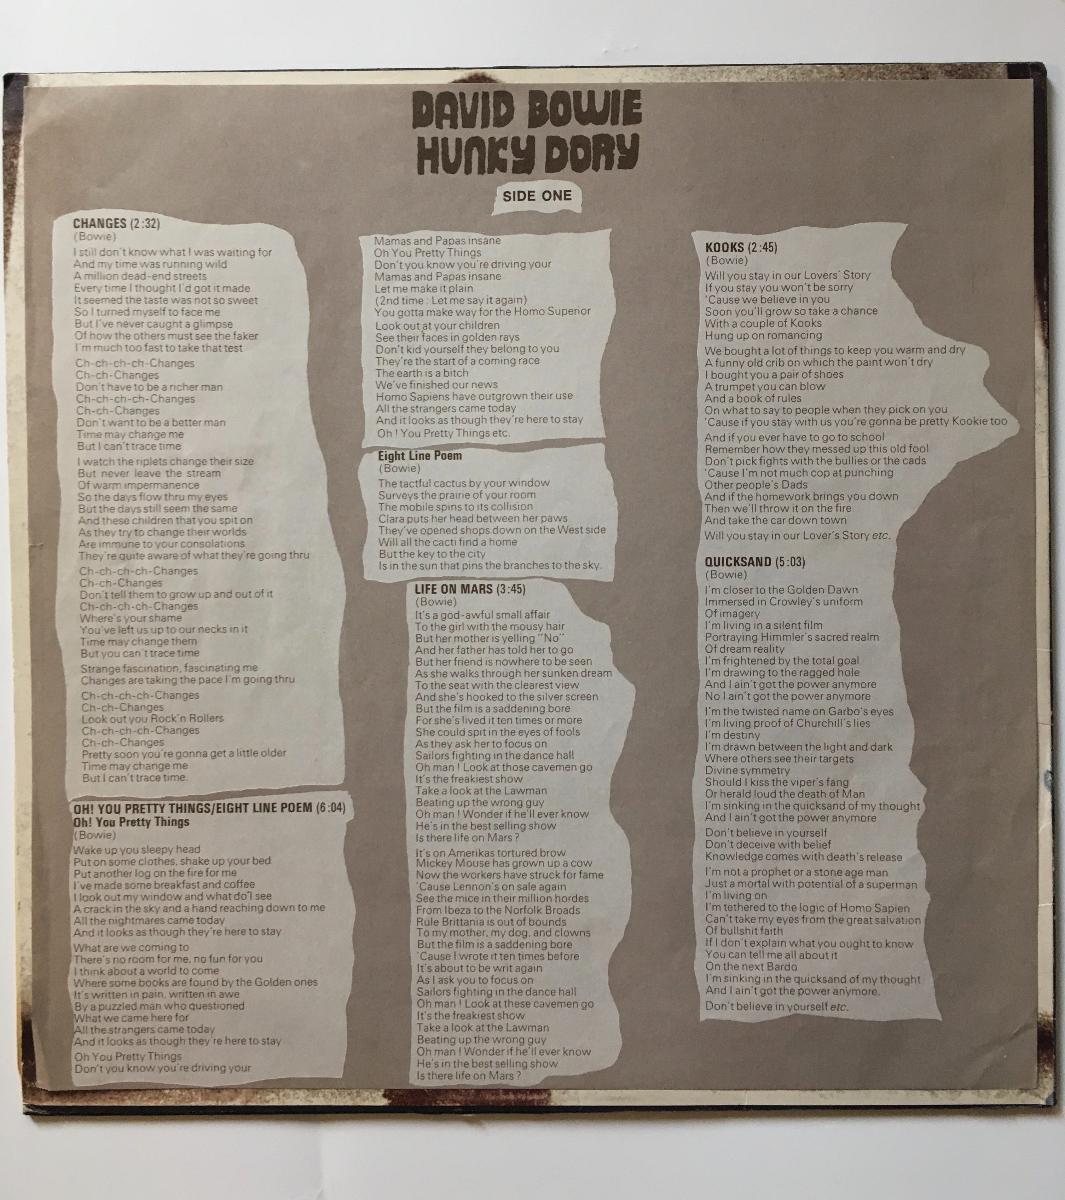 Prodám původní UK vydání LP David Bowie Hunky Dory z roku 1972 - Hudba